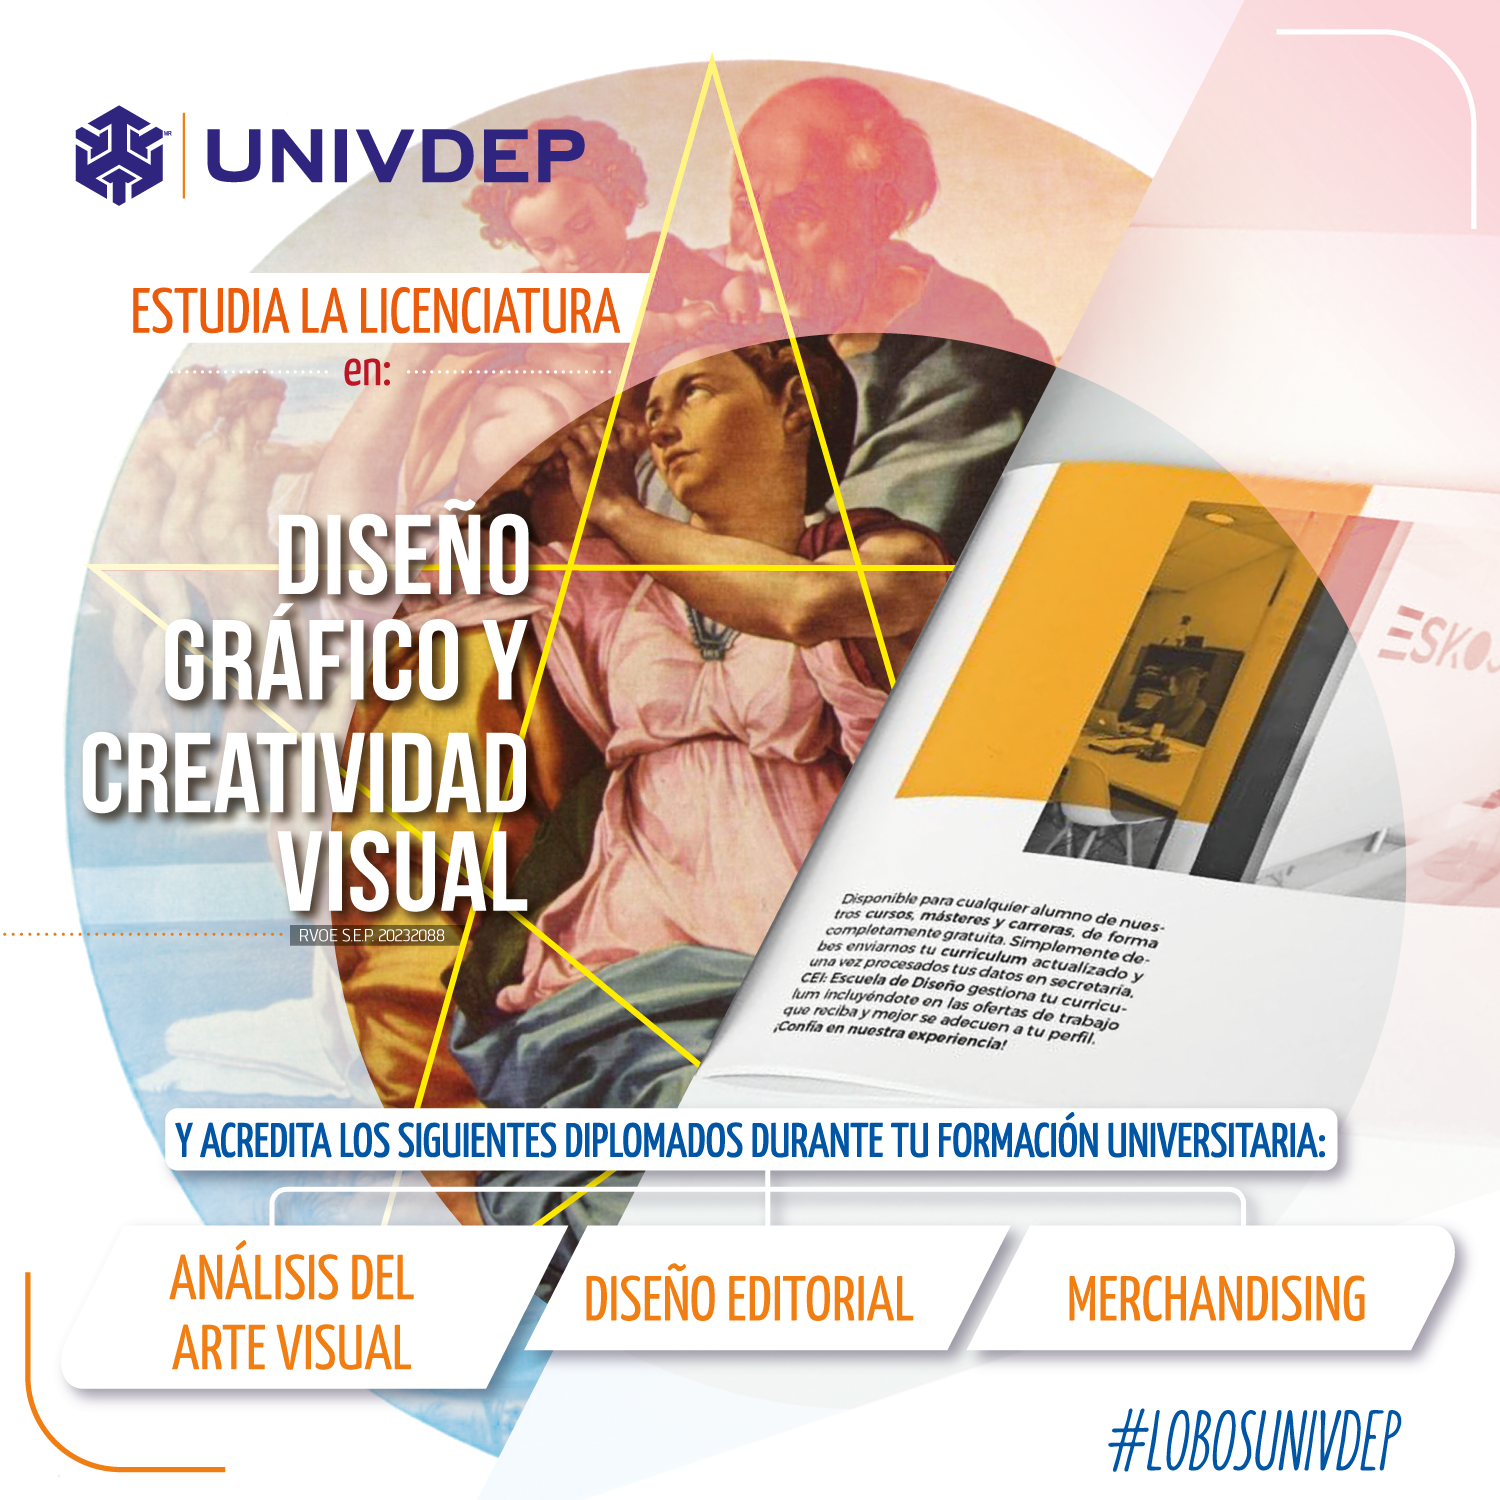 Univdep Diplomado Diseno Creatividad Visual